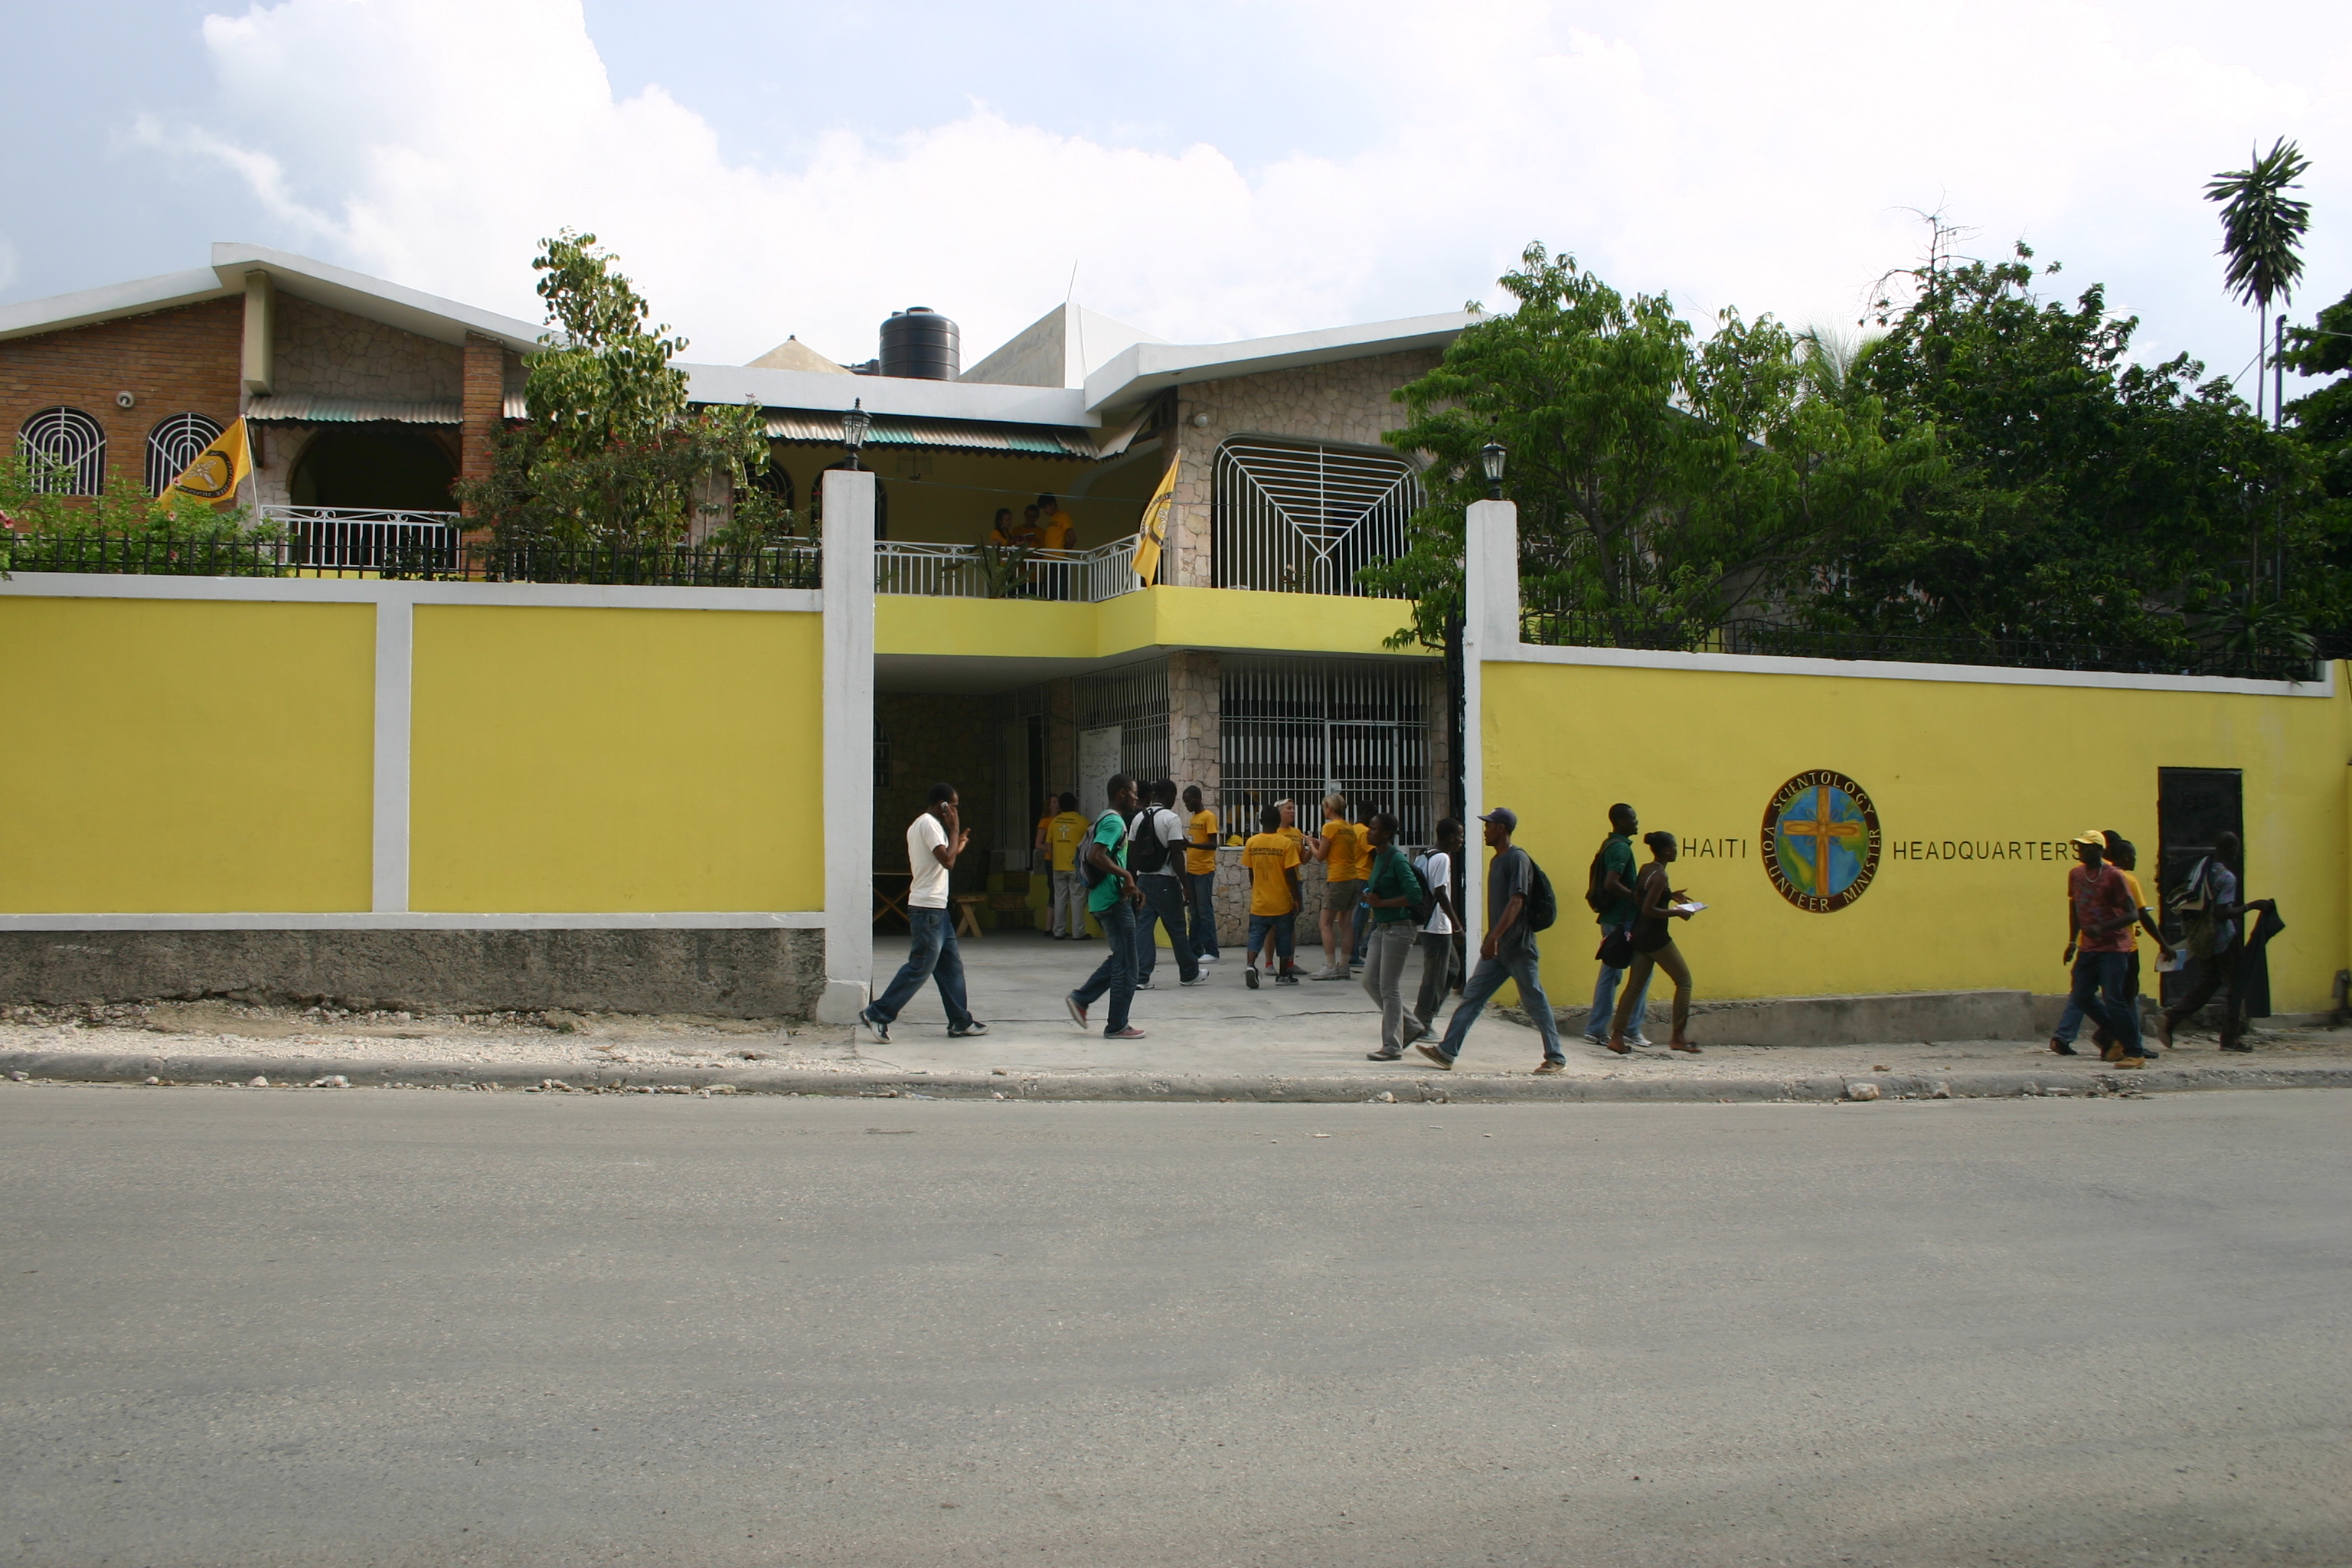 Новое трёхэтажное здание добровольных священников на Гаити позволяет быстро оказывать помощь населению Гаити.